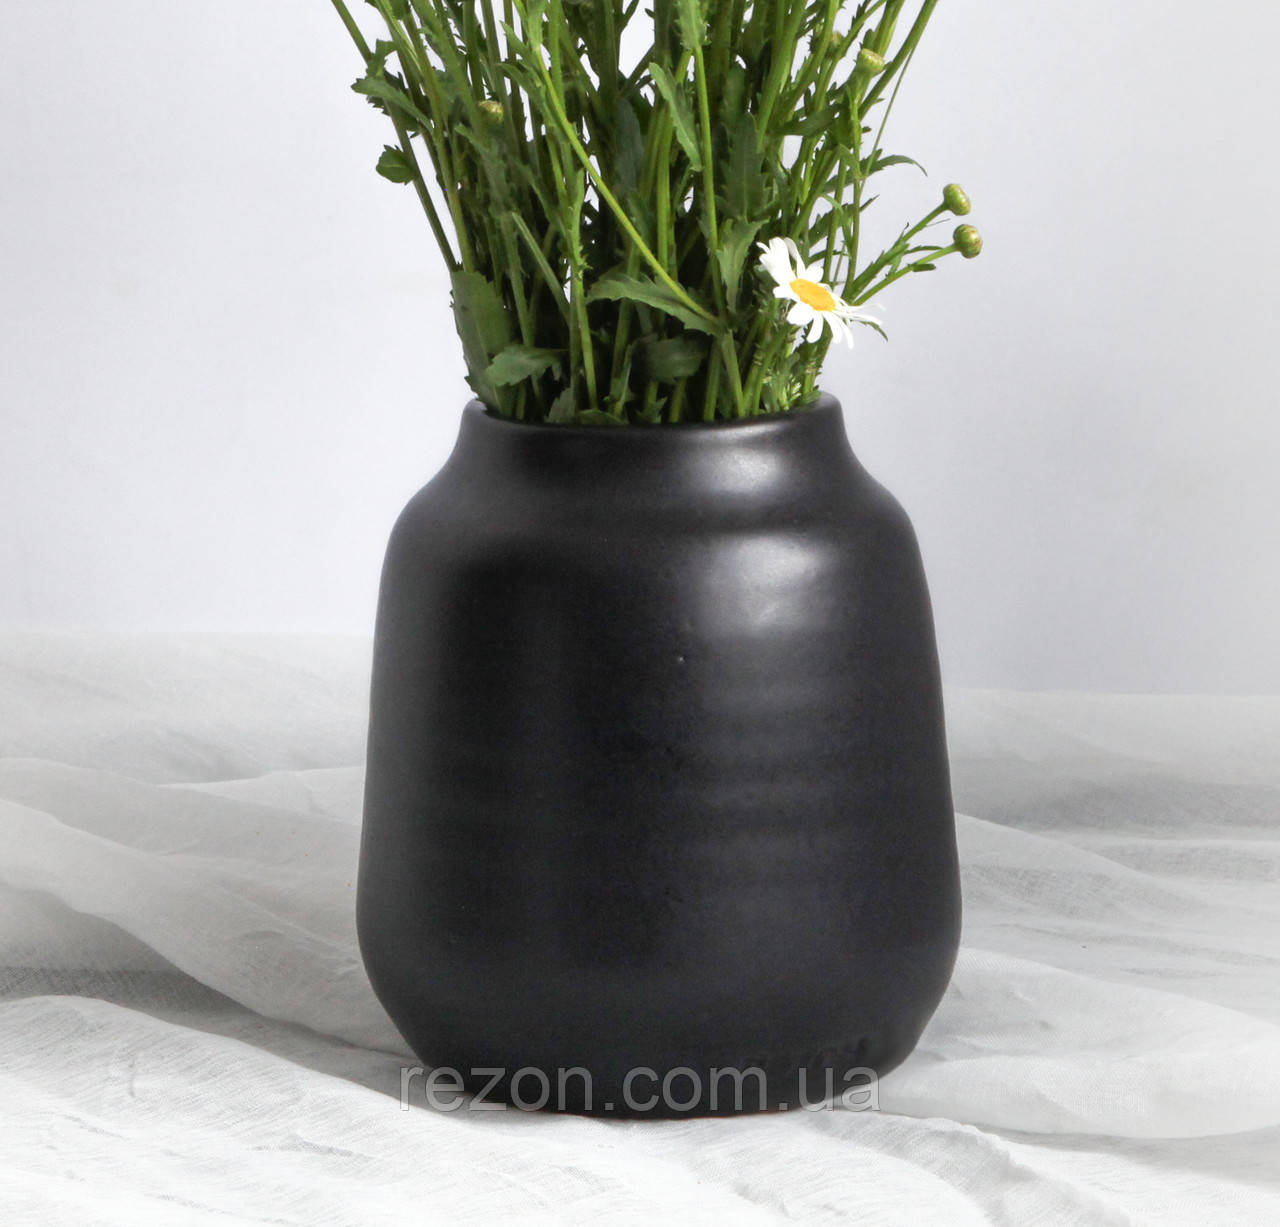 Ваза гончарна керамічна для квітів настільна 17 см "Широка 1" Чорний мат Rezon